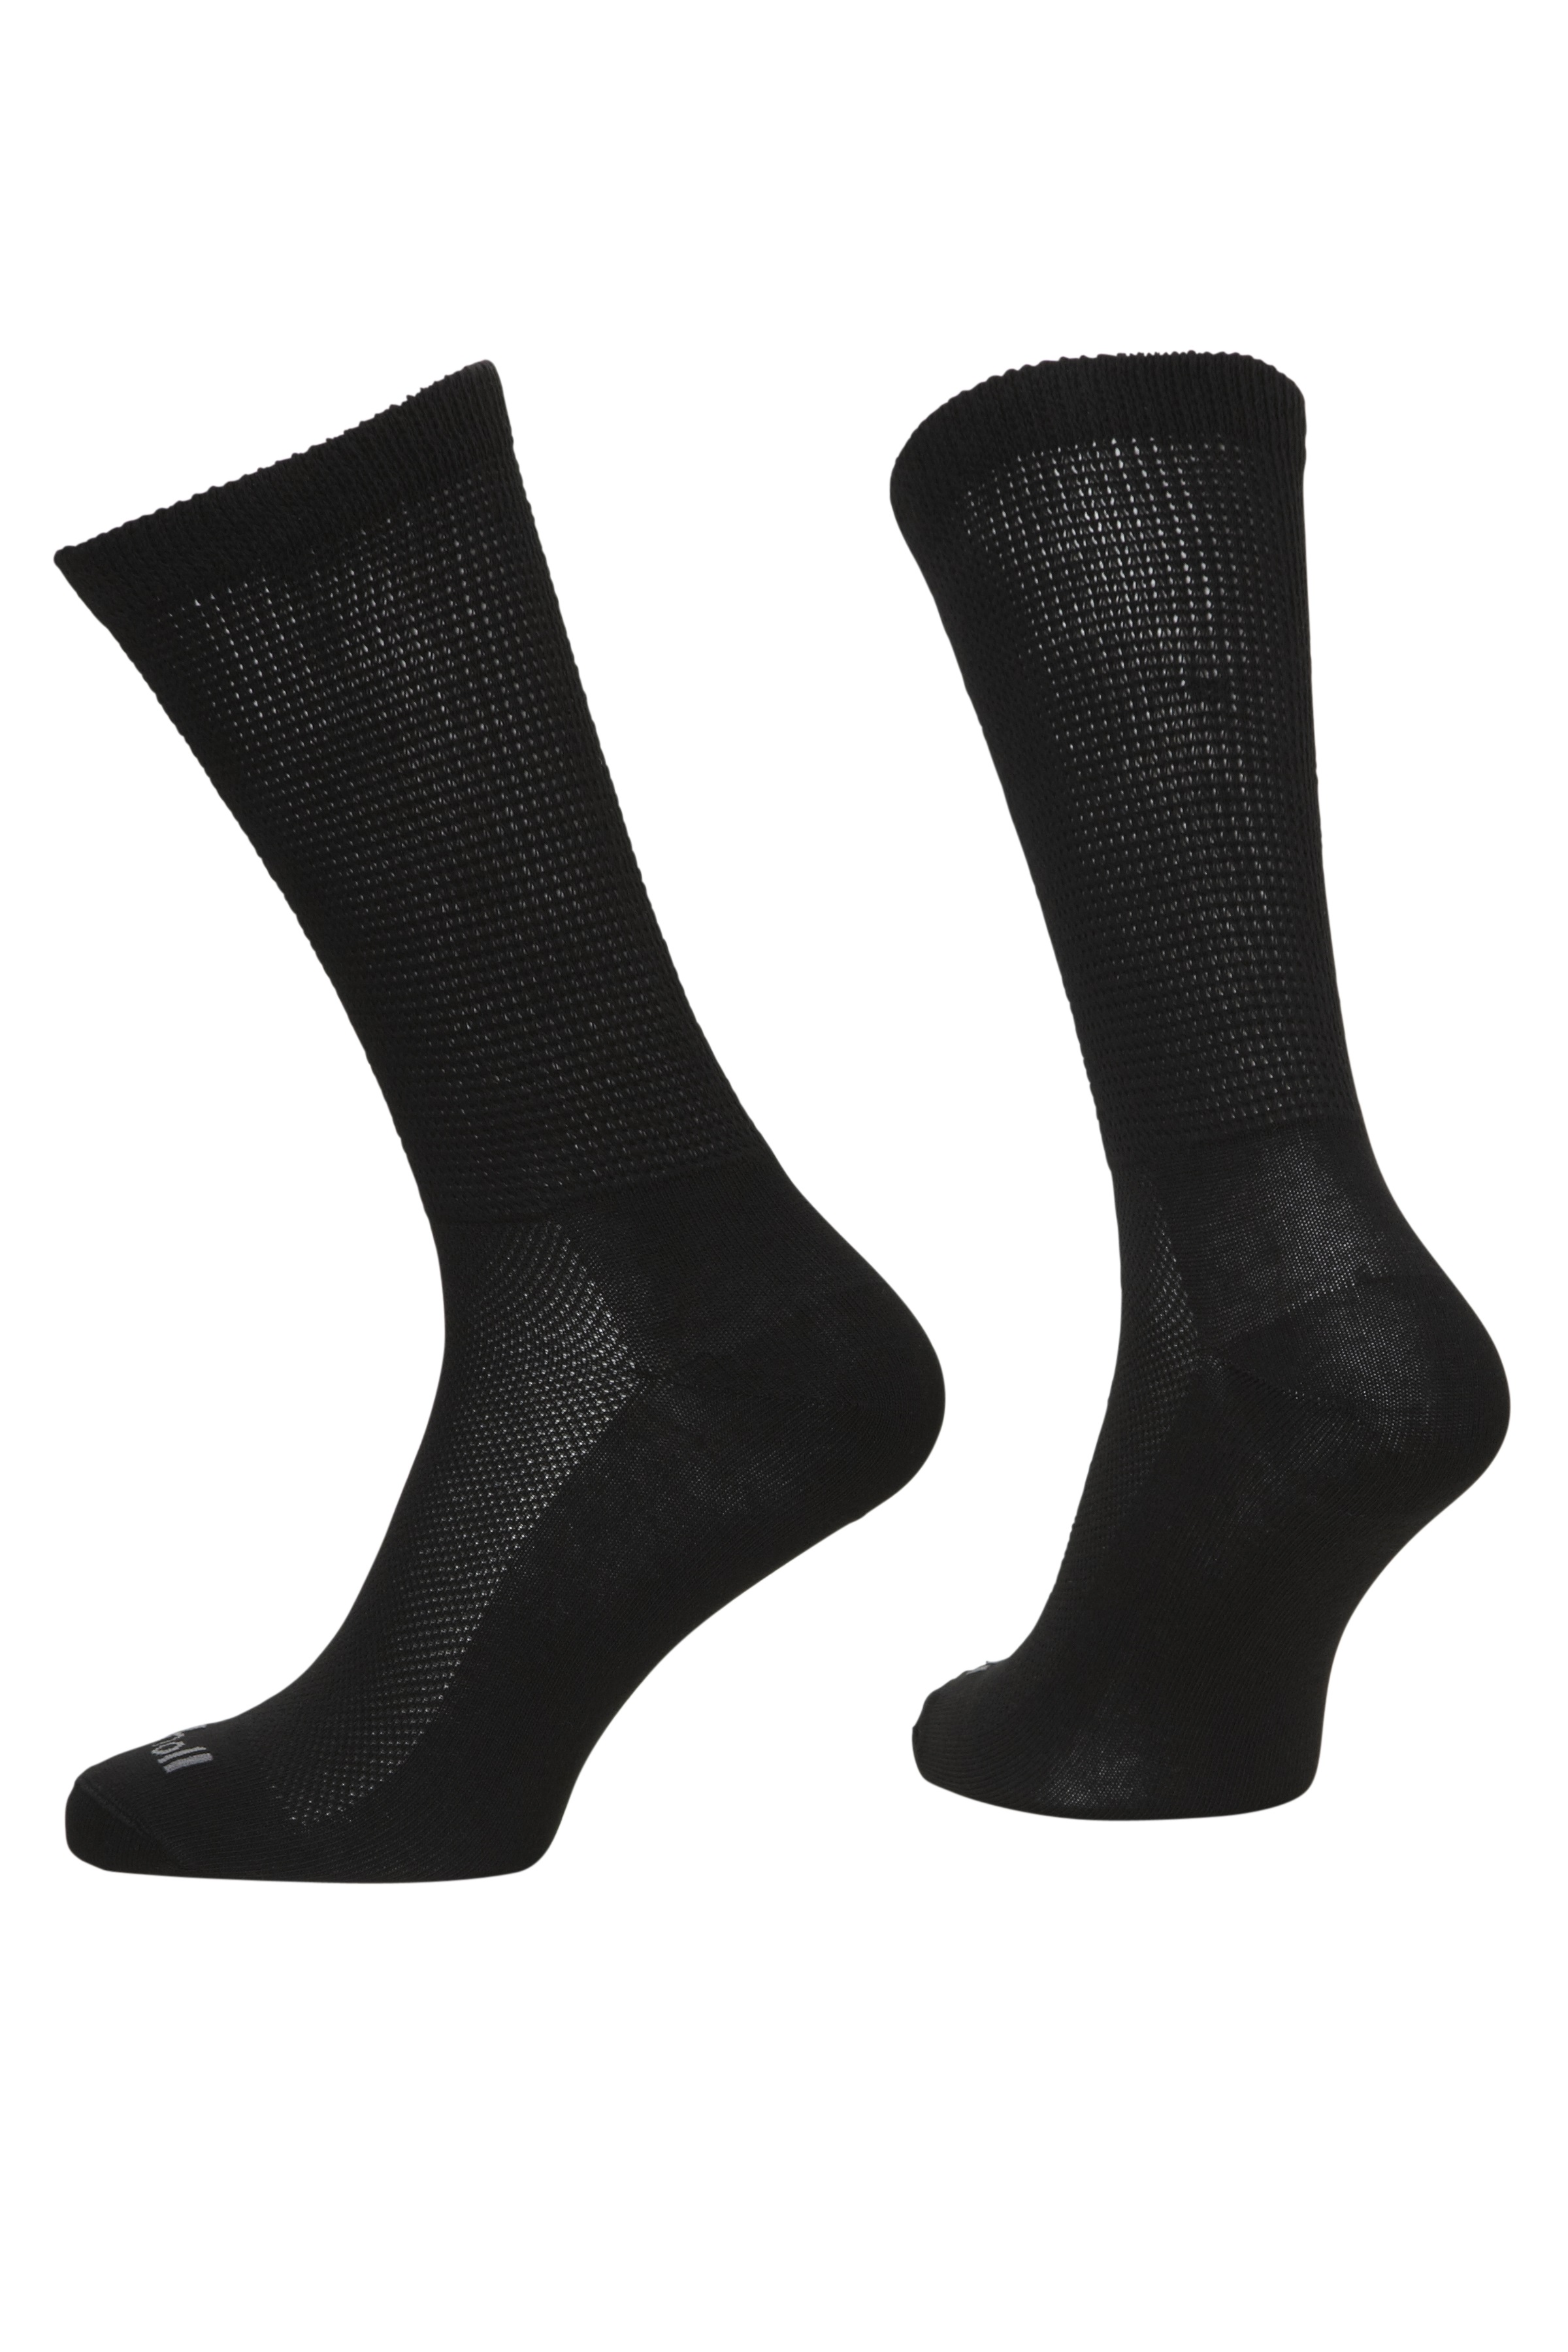 SCHOLL Ponožky pánské Soft černé  2 - pack velikost M(39-42)